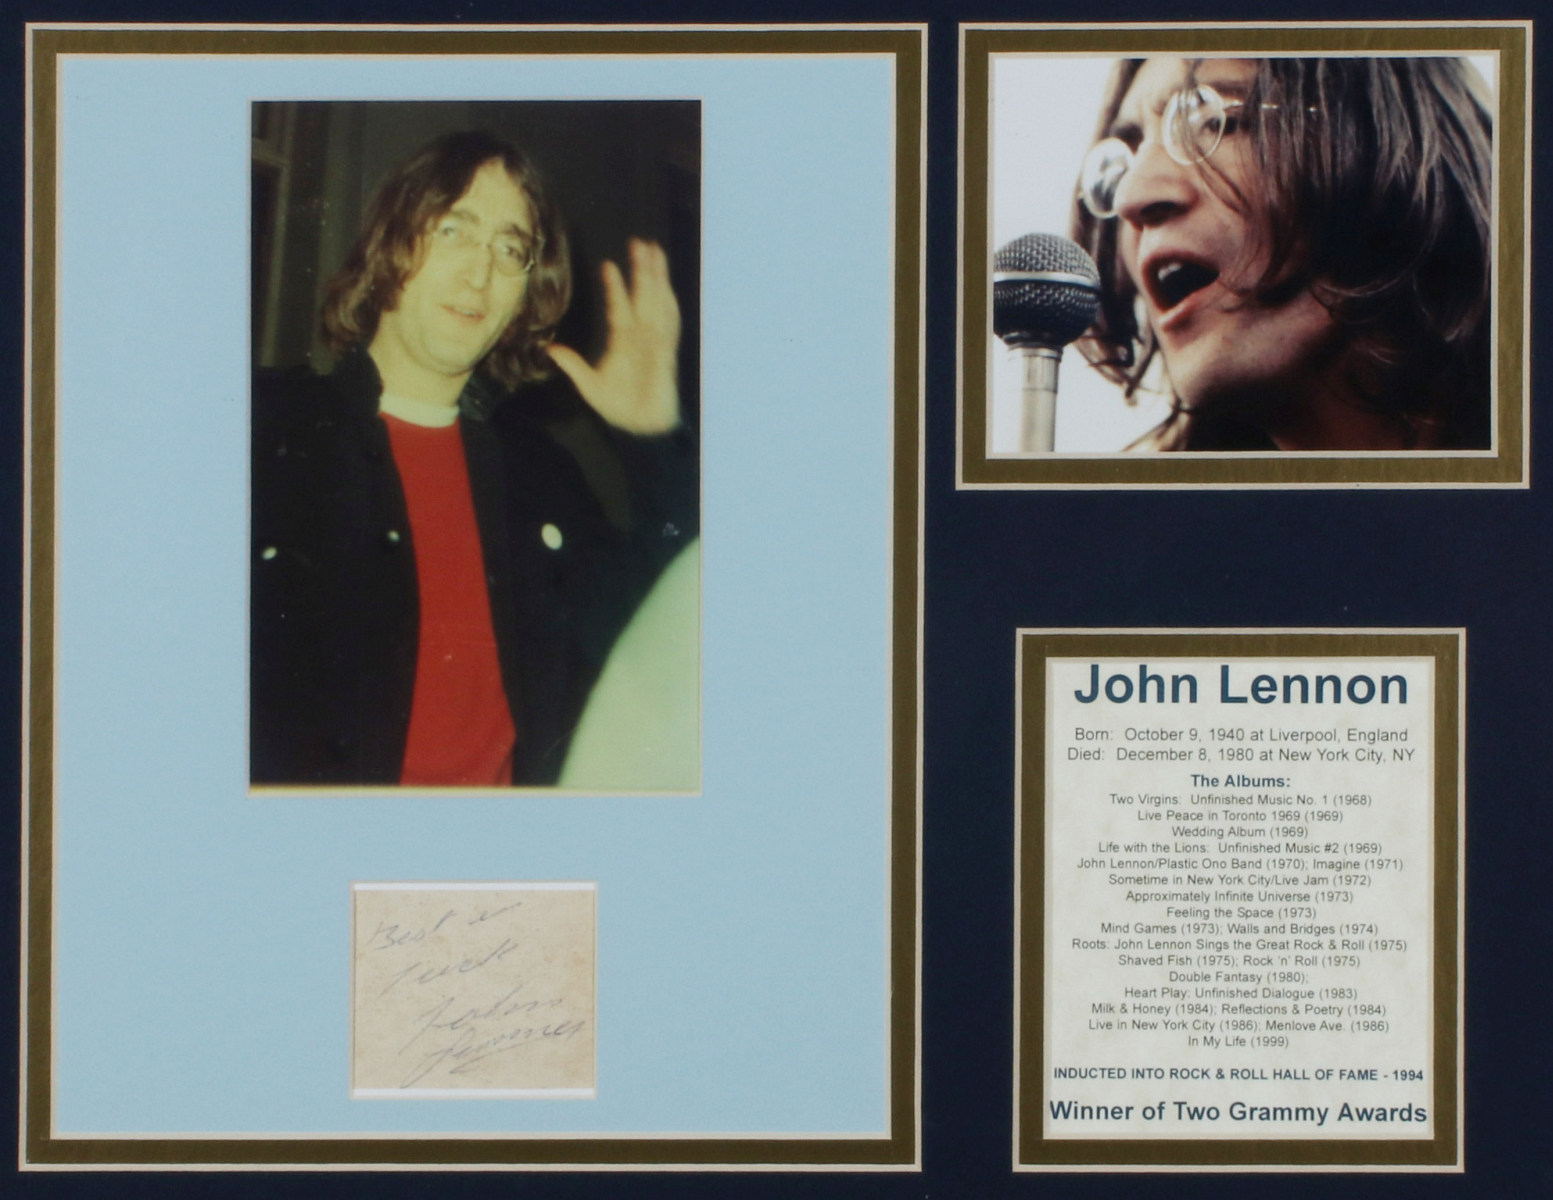 JOHN LENNON AUTOGRAPH INSCRIPTION CLIP WITH IMAGES